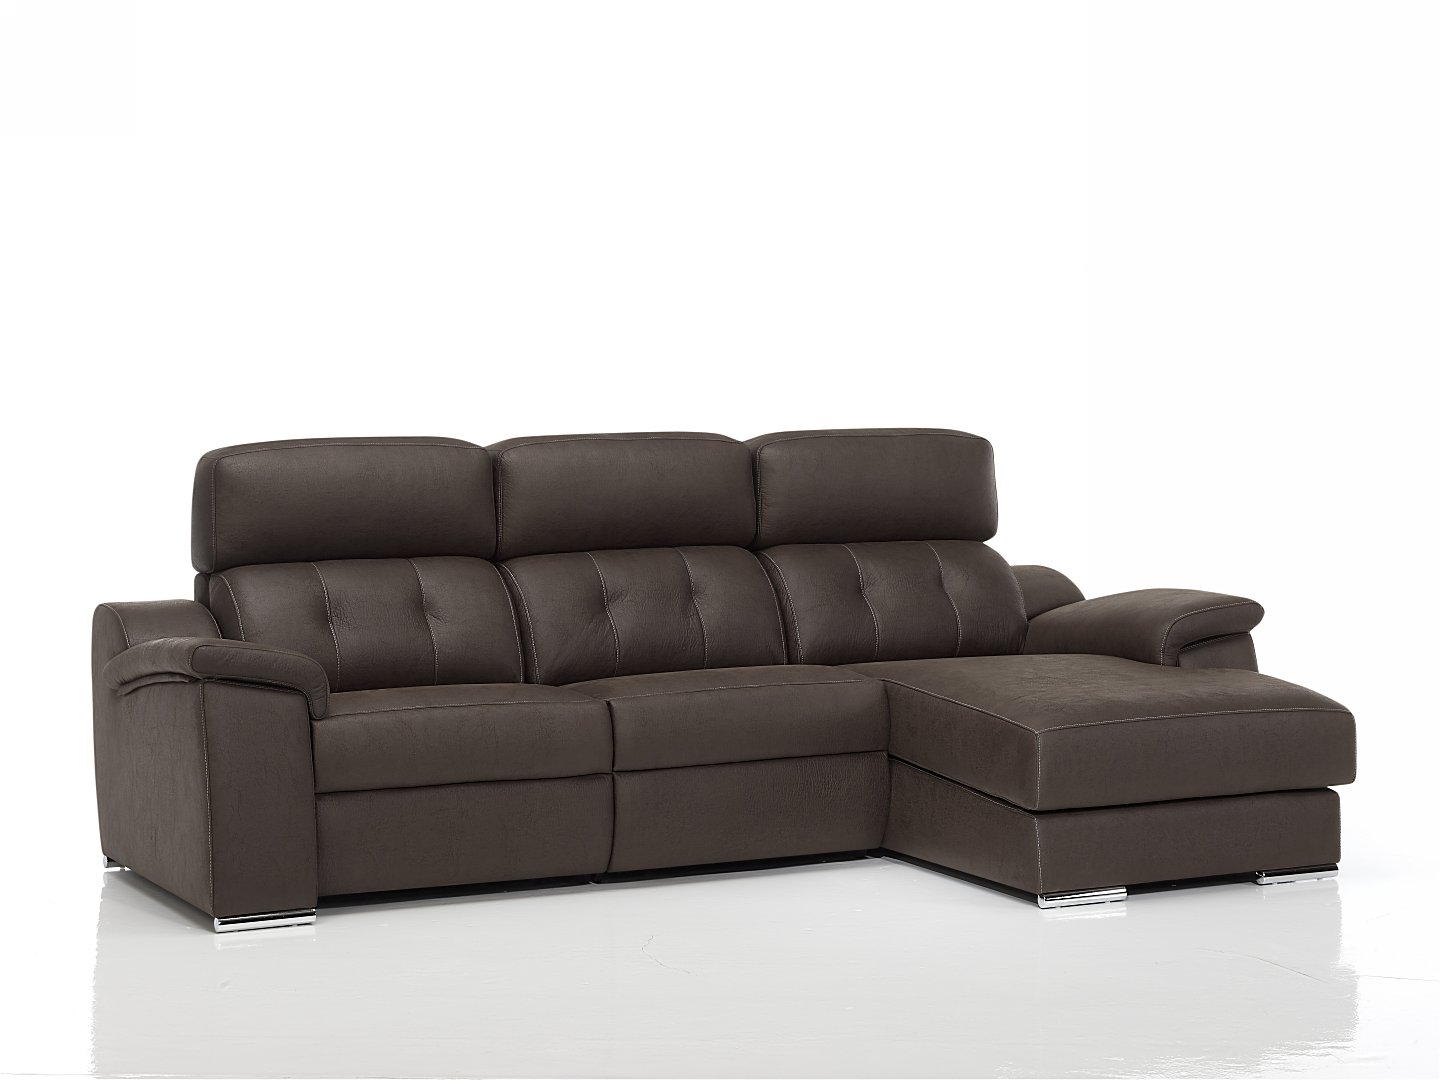 Coimbra sofá relax motorizado 001 by Verazzo Design en muebles antoñán® León